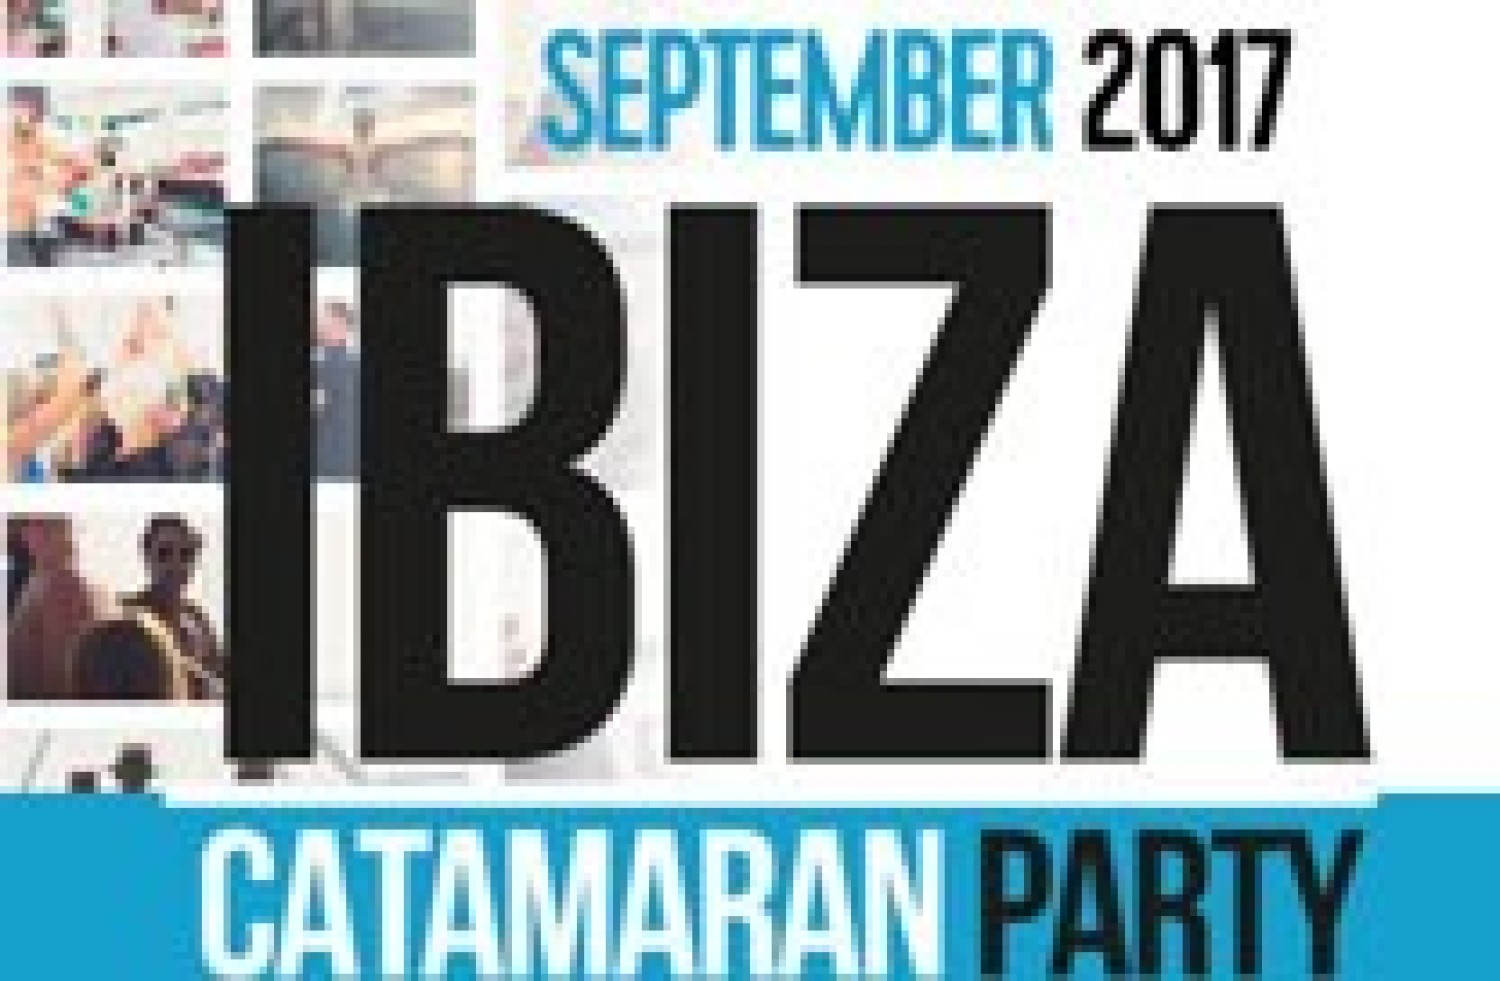 Party nieuws: 2e boot ingezet voor Ibiza Catamaran Party september!